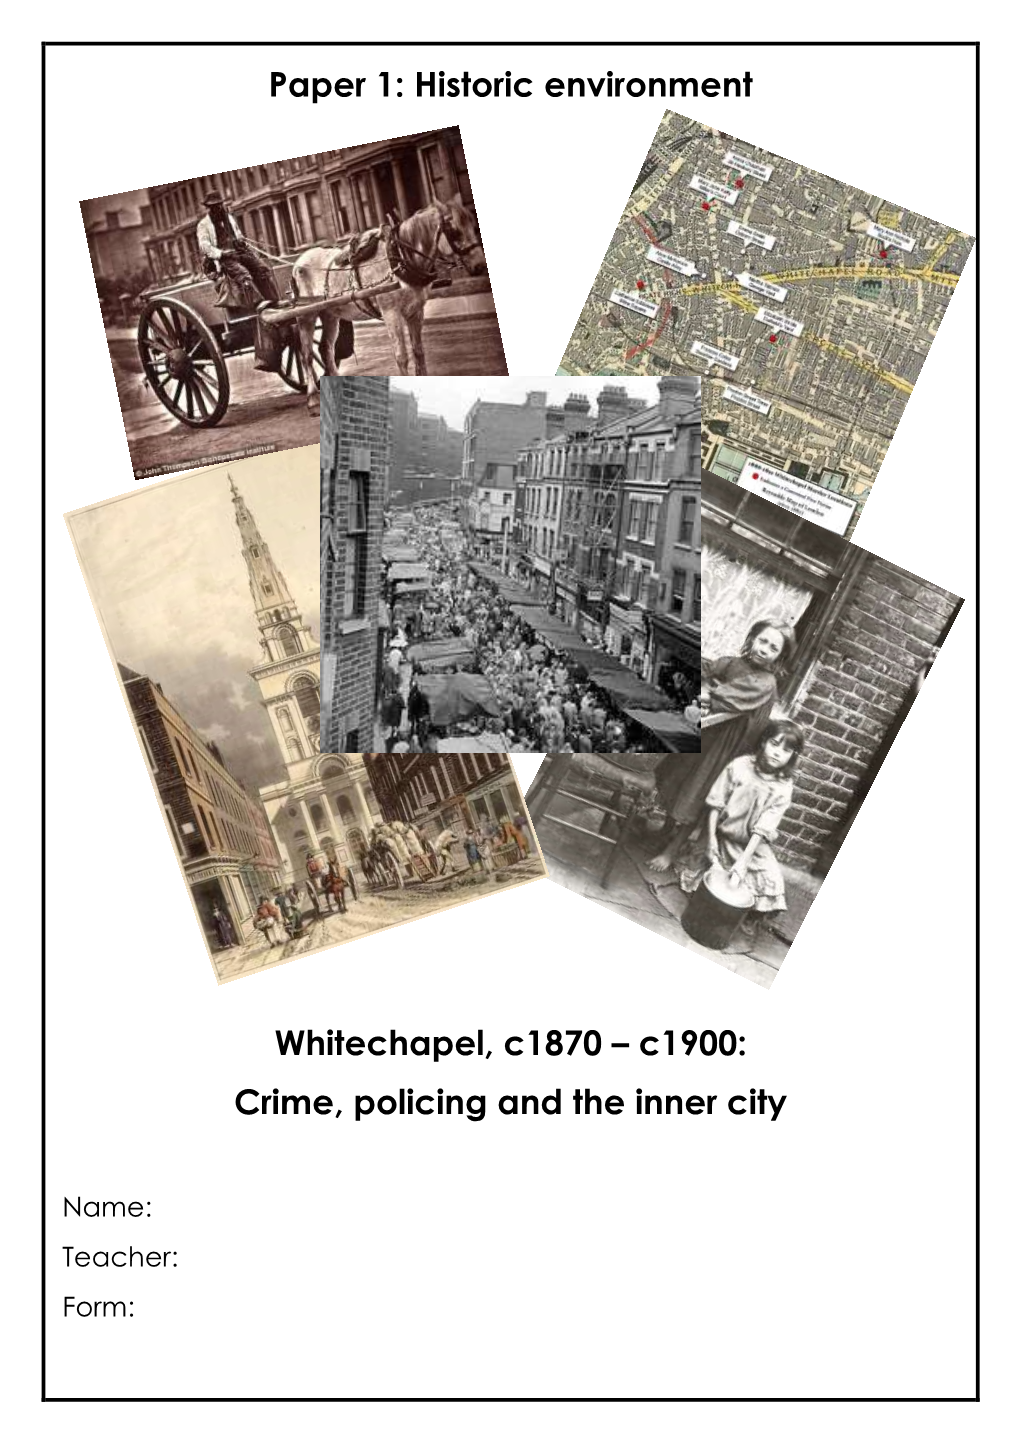 Paper 1: Historic Environment Whitechapel, C1870 – C1900: Crime